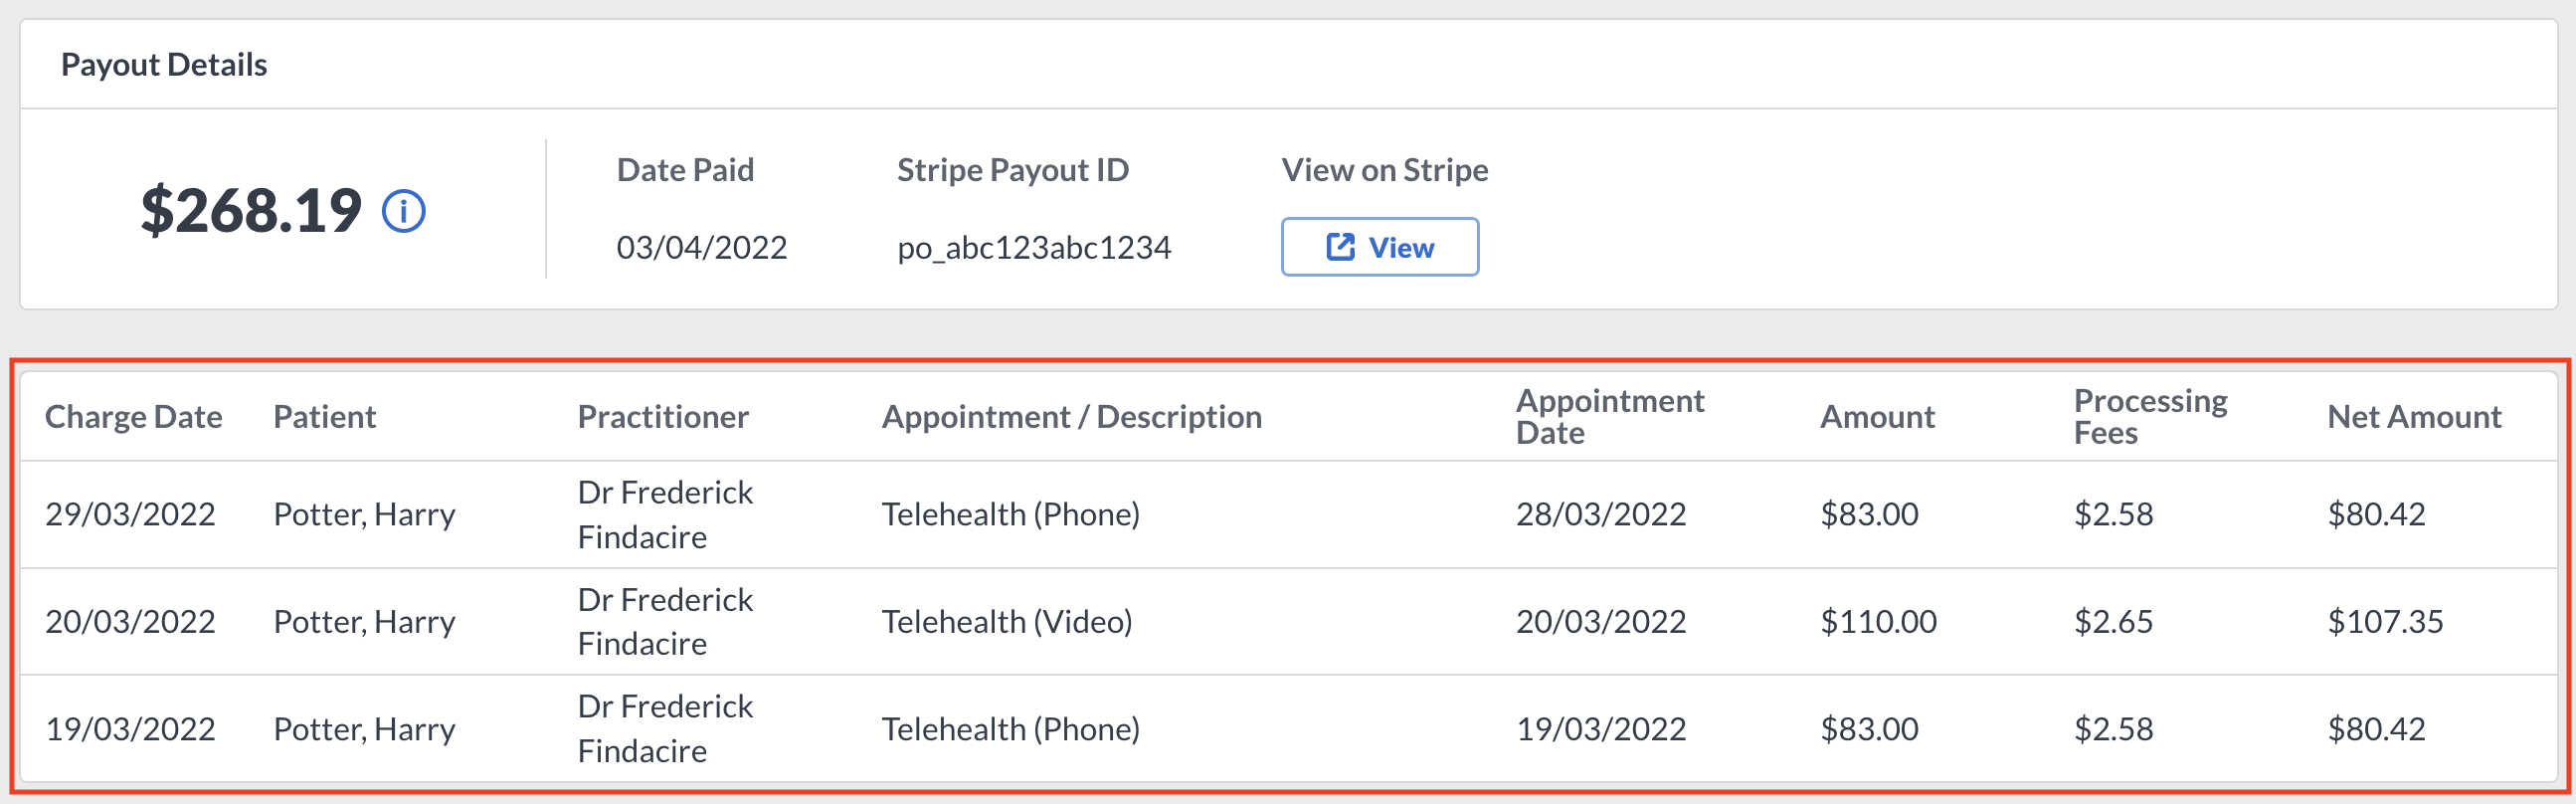 Payout_Details_Patients.png